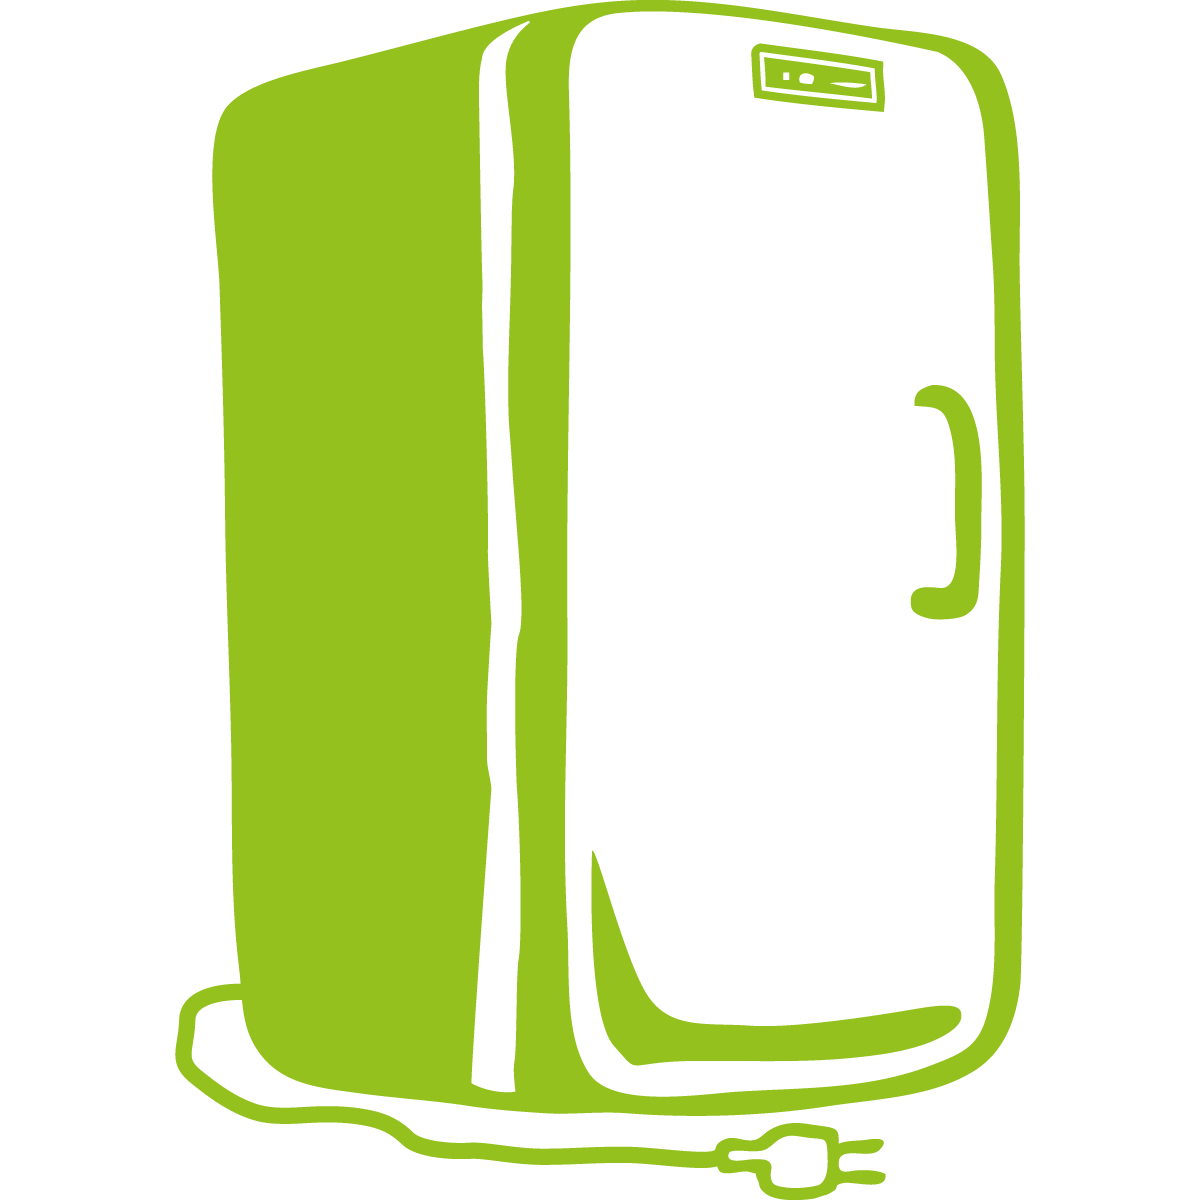 Réfrigérateur gros équipement froid électrique ménager de cuisine